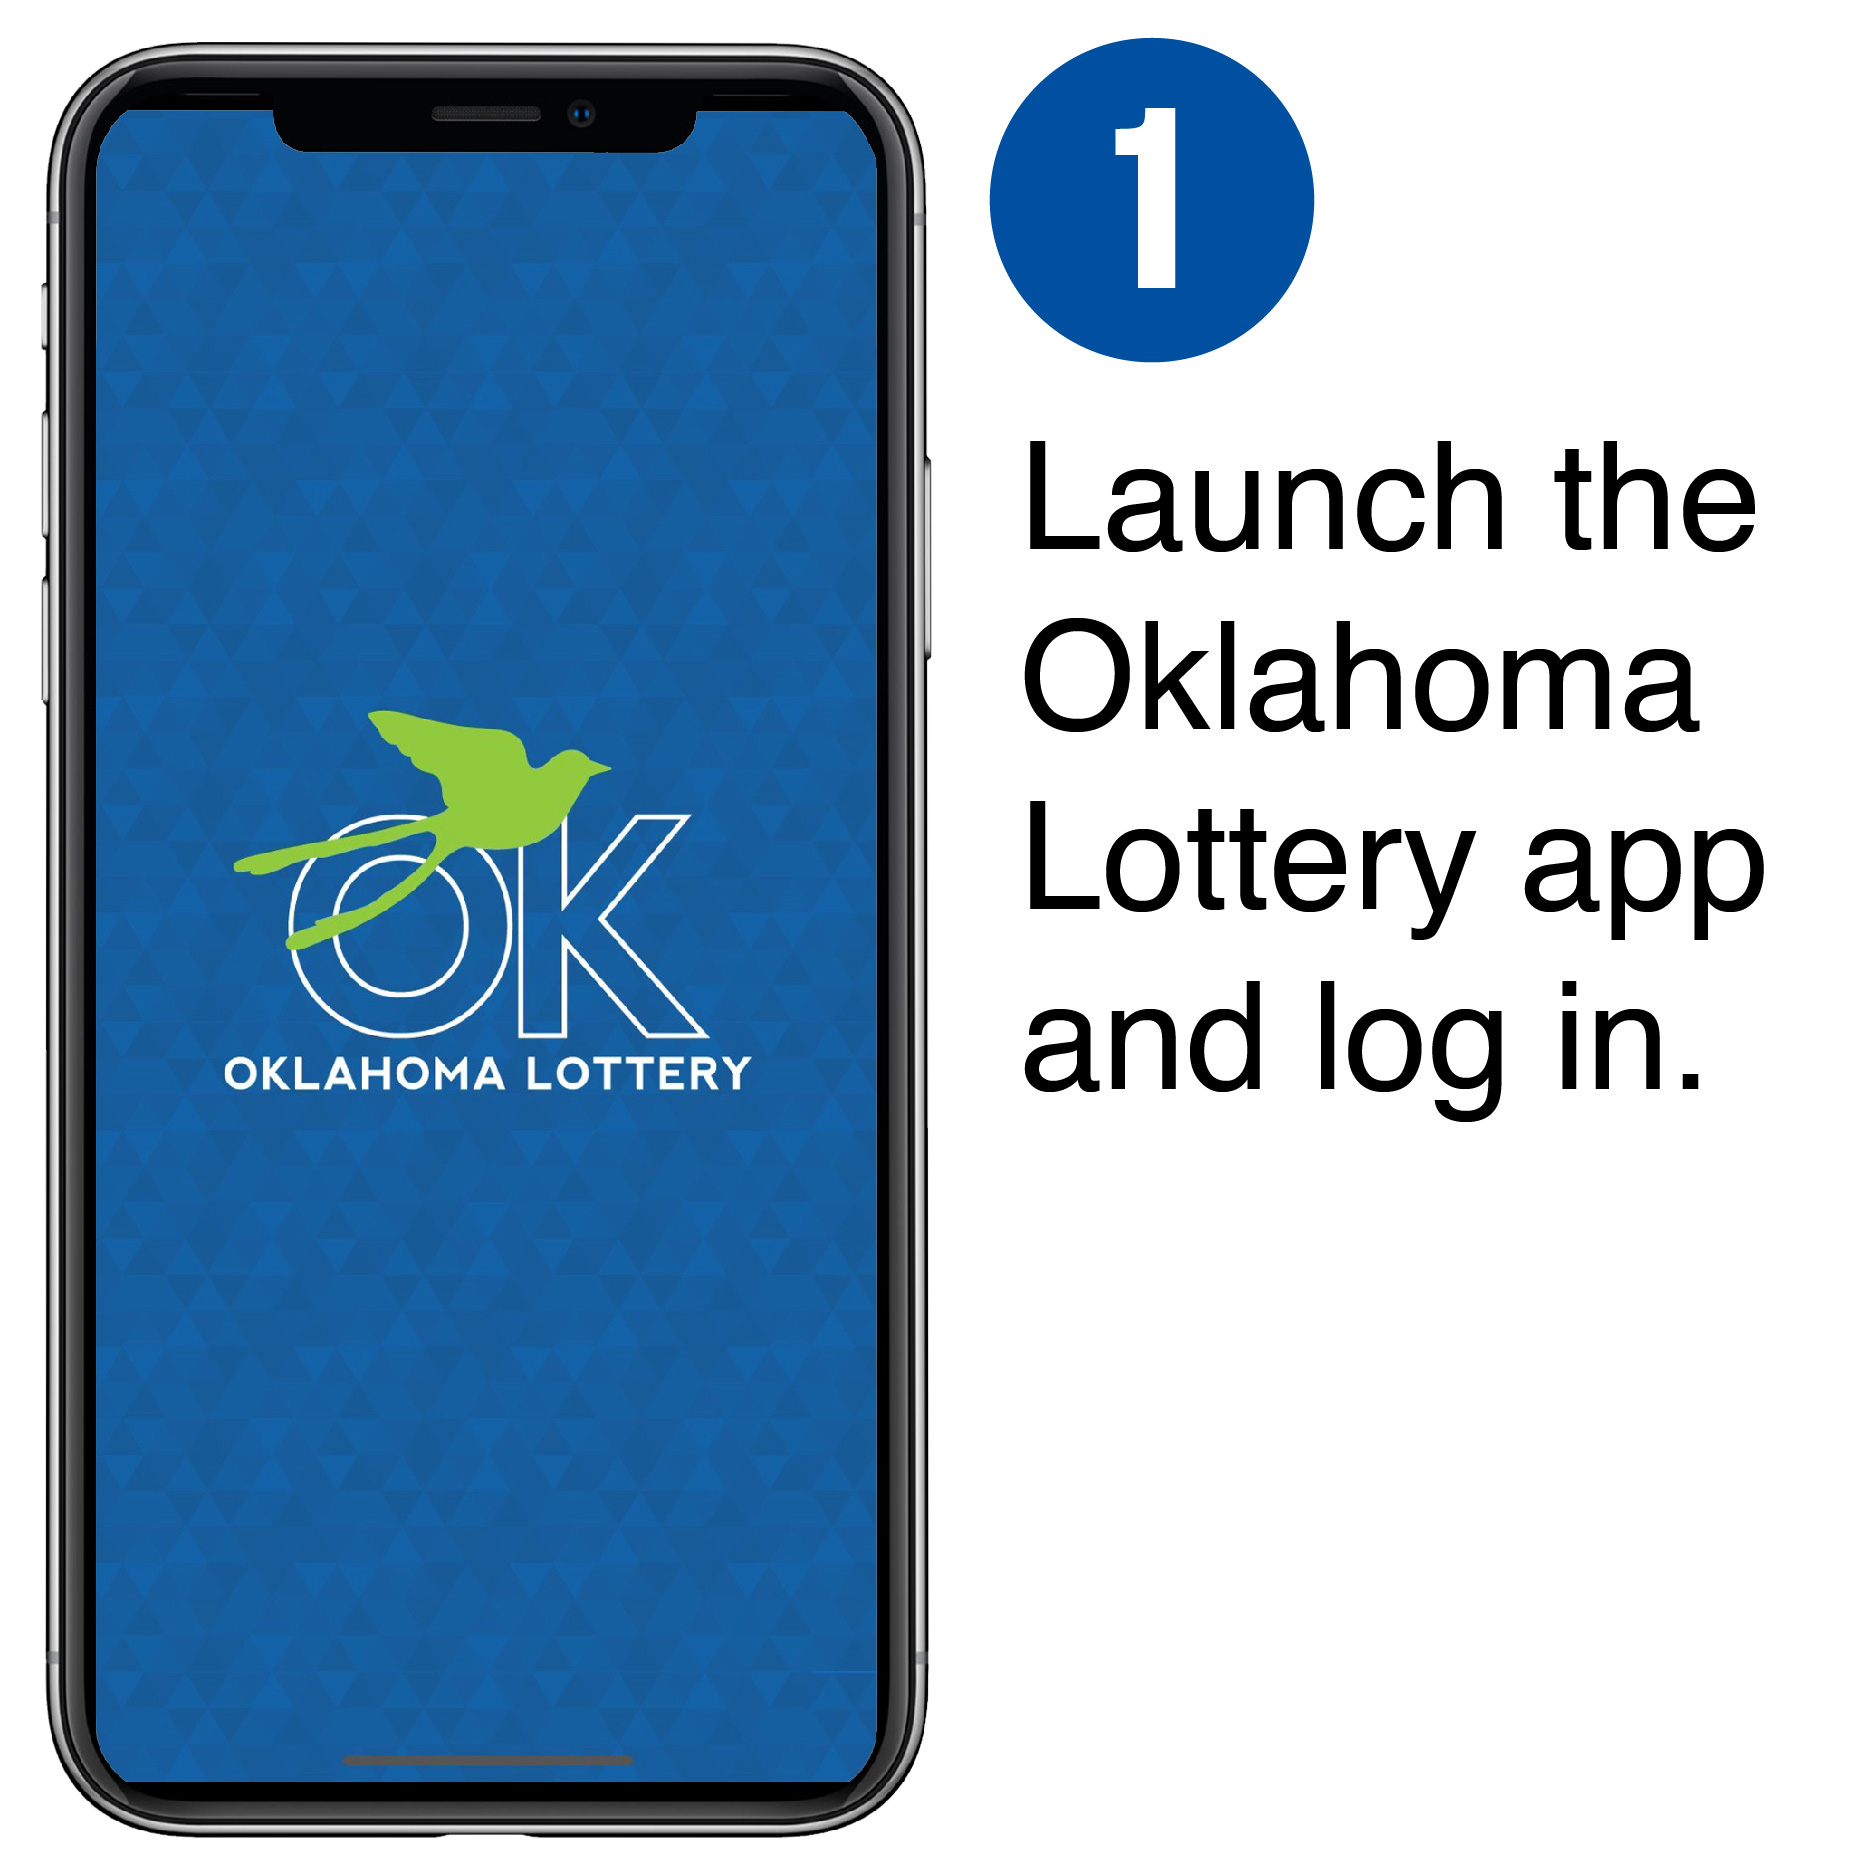 1. open the oklahoma lottery app